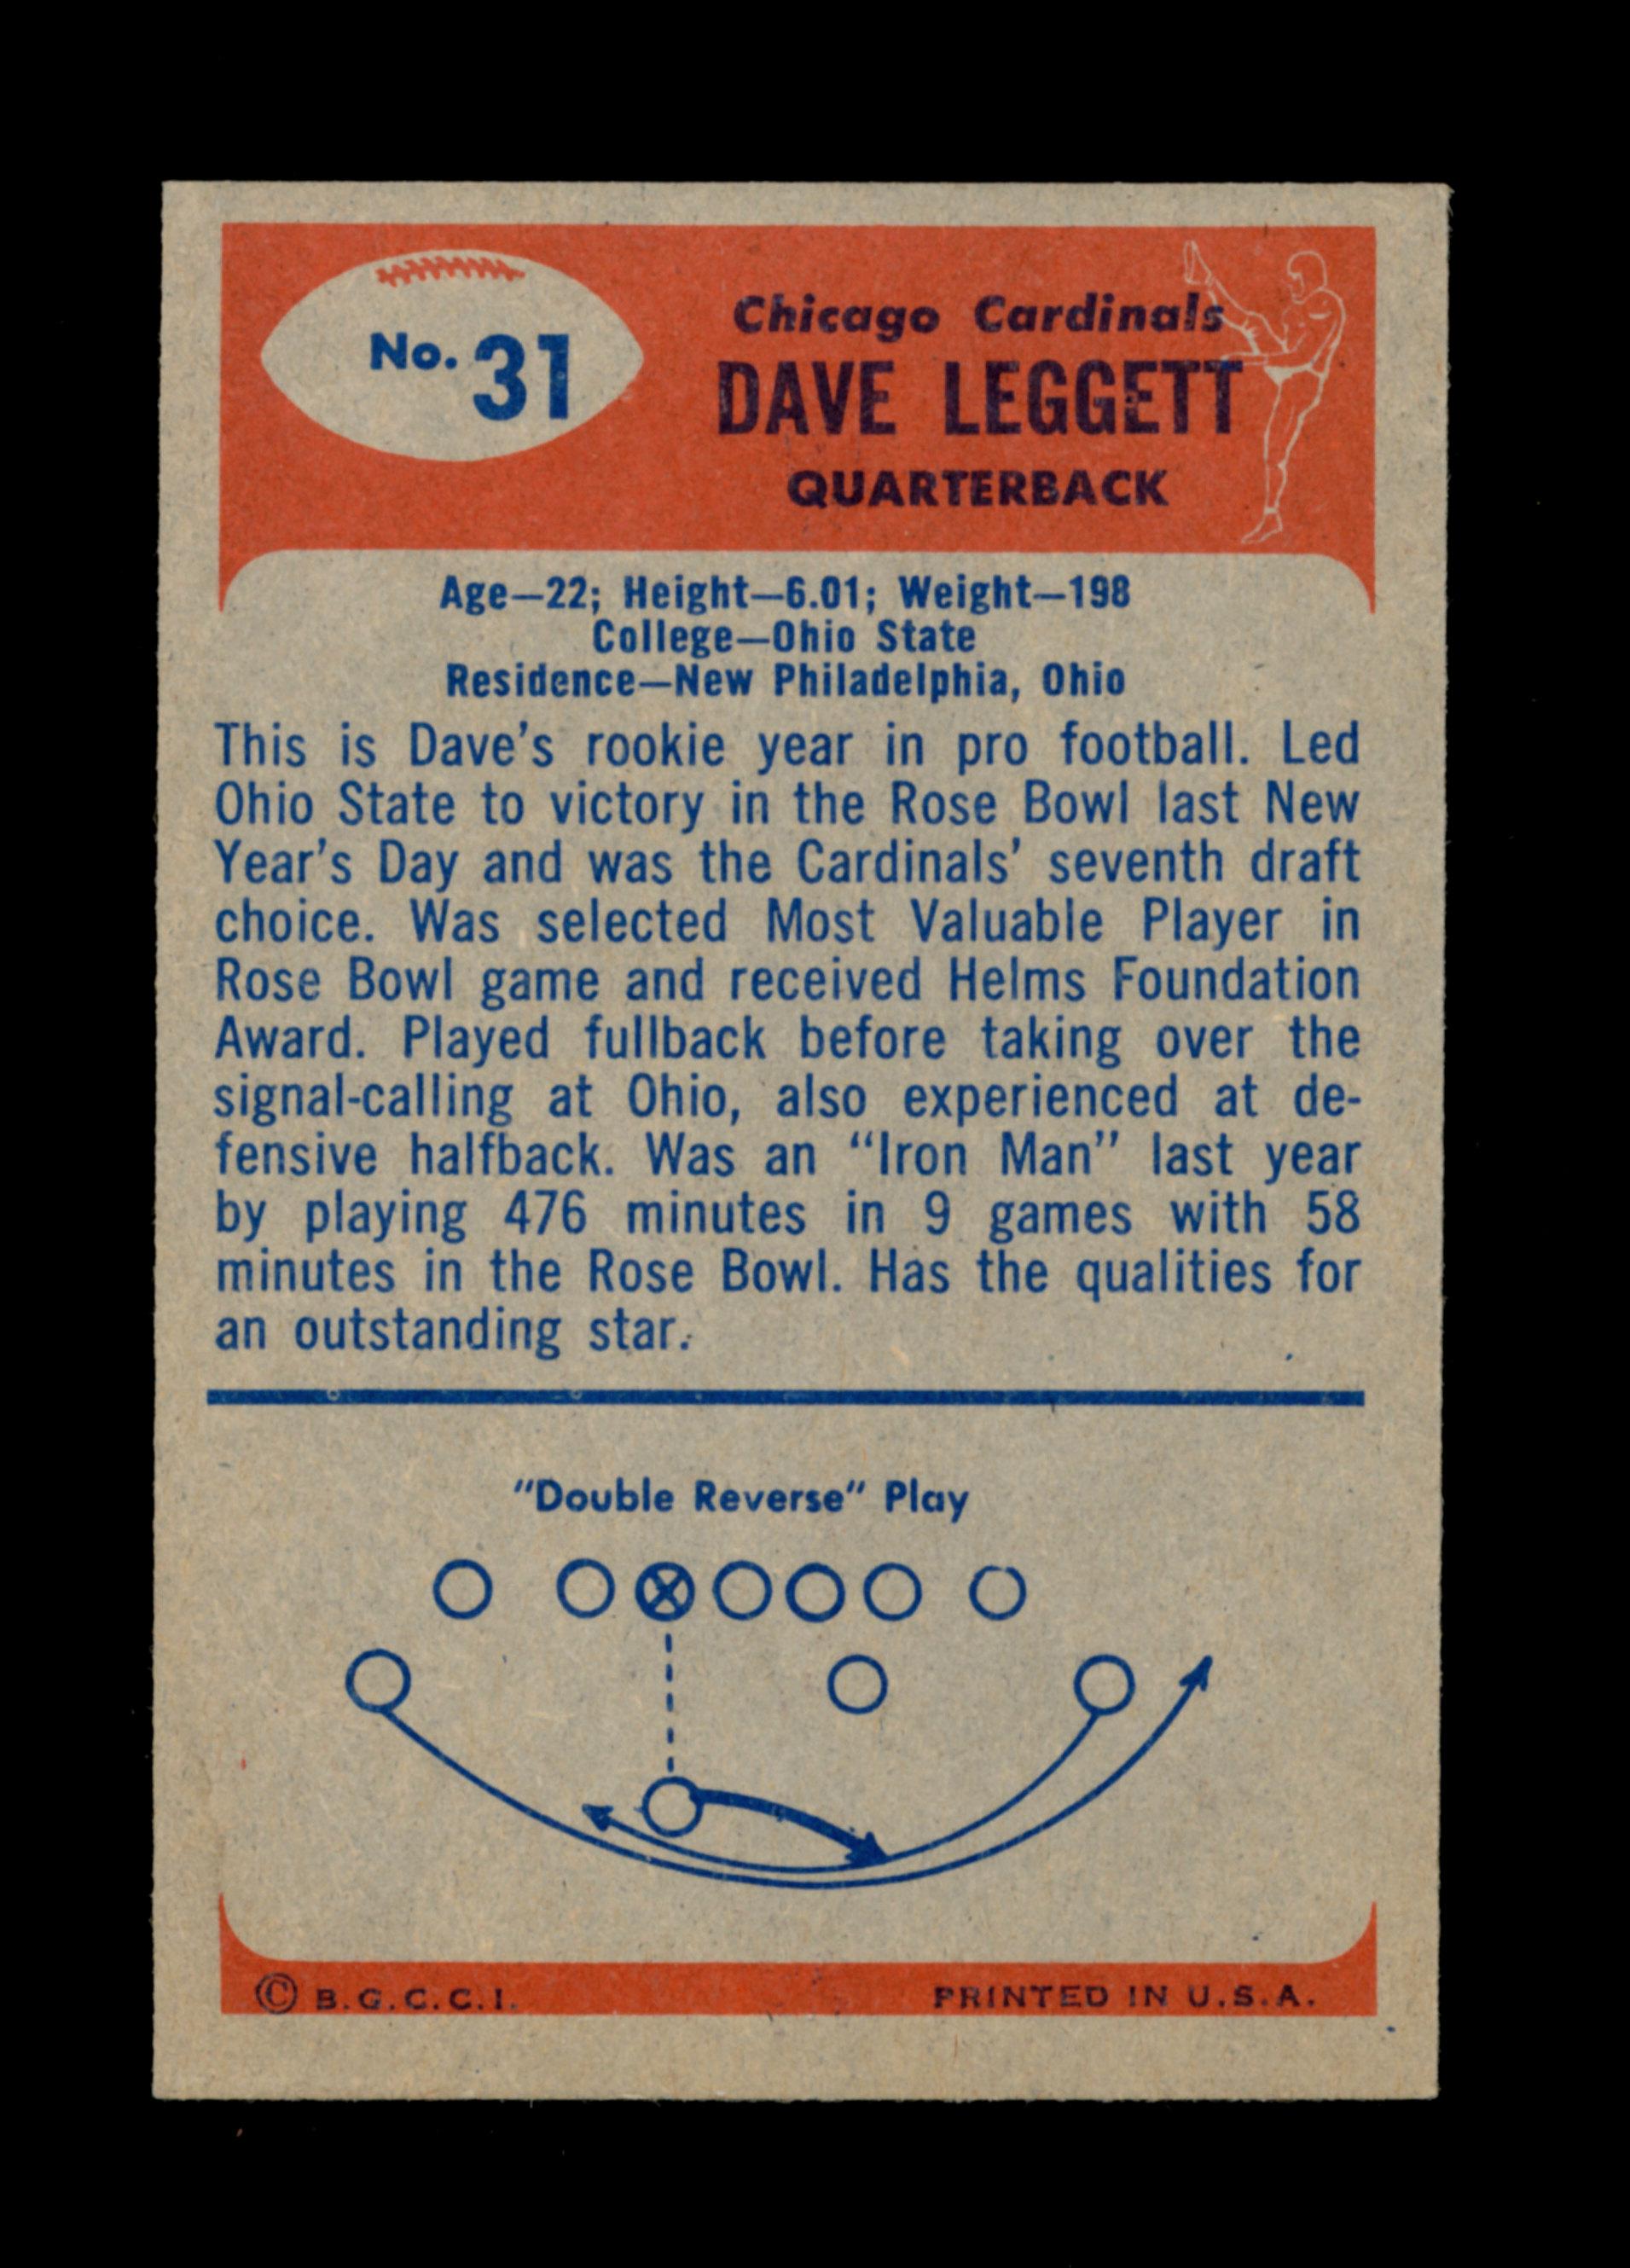 1955 Bowman Football Card #31 Dave Leggett Chicago Cardinals.